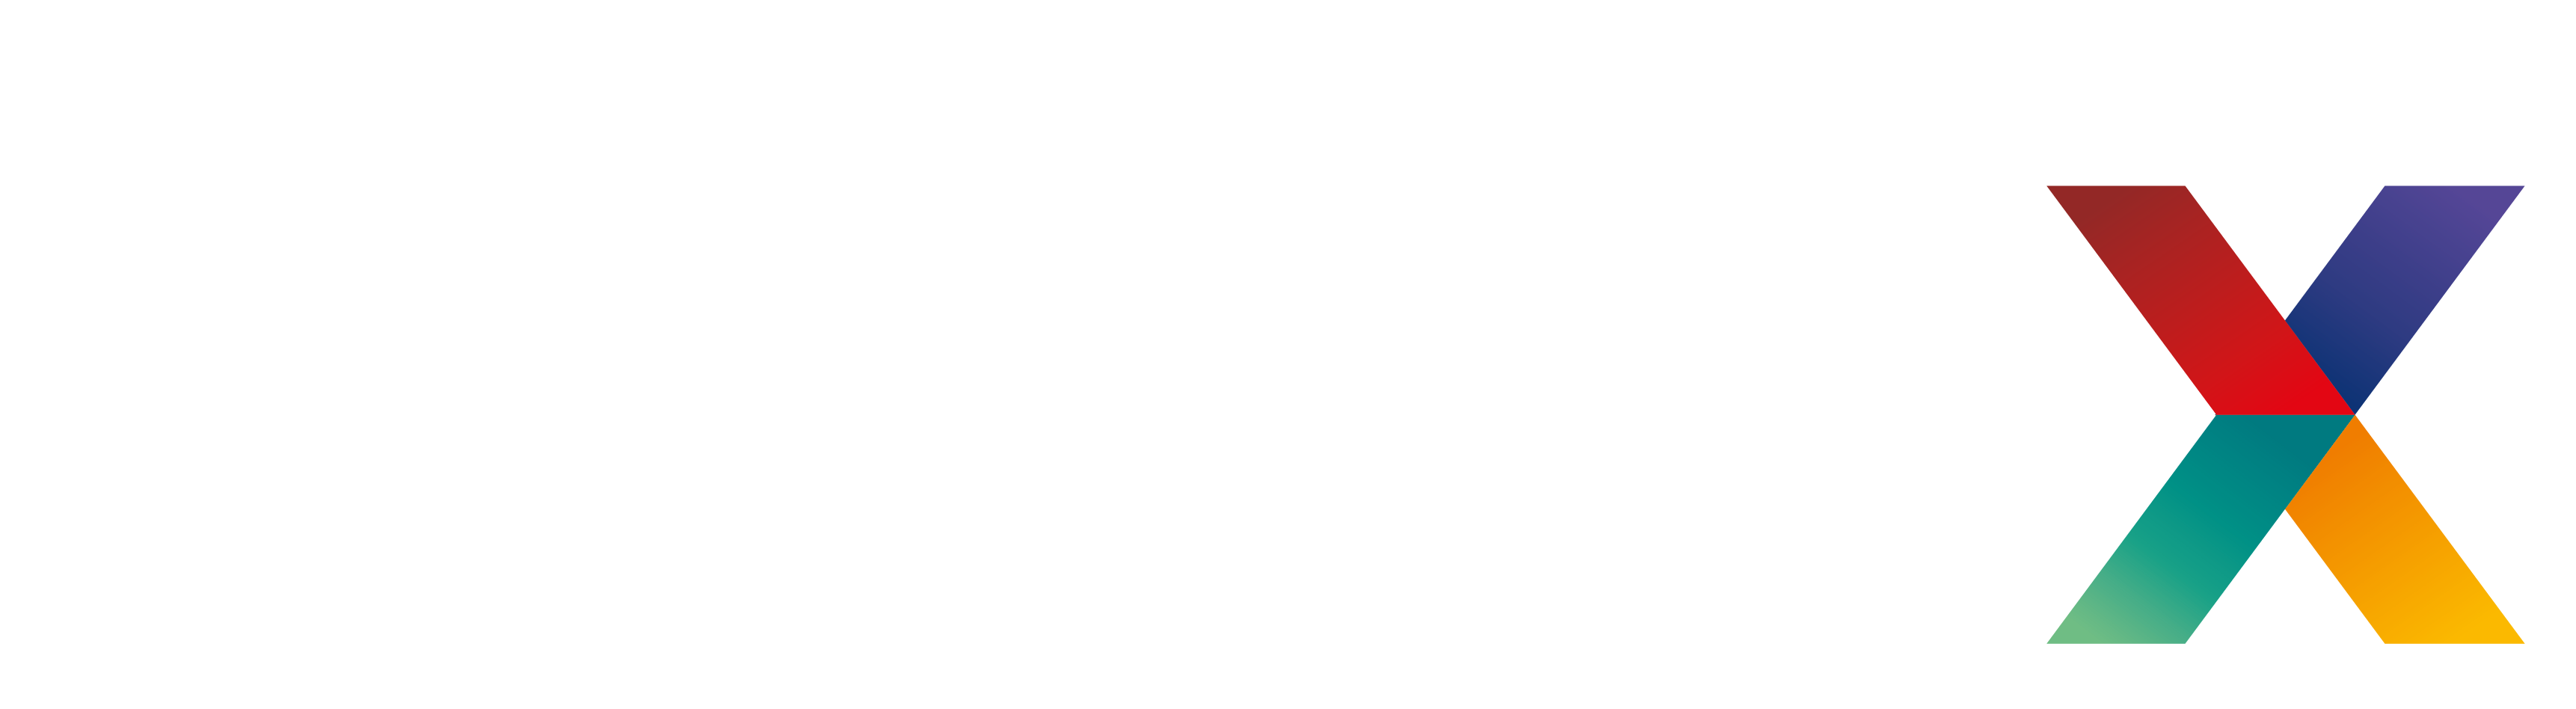 SUSTx reverse logo-large